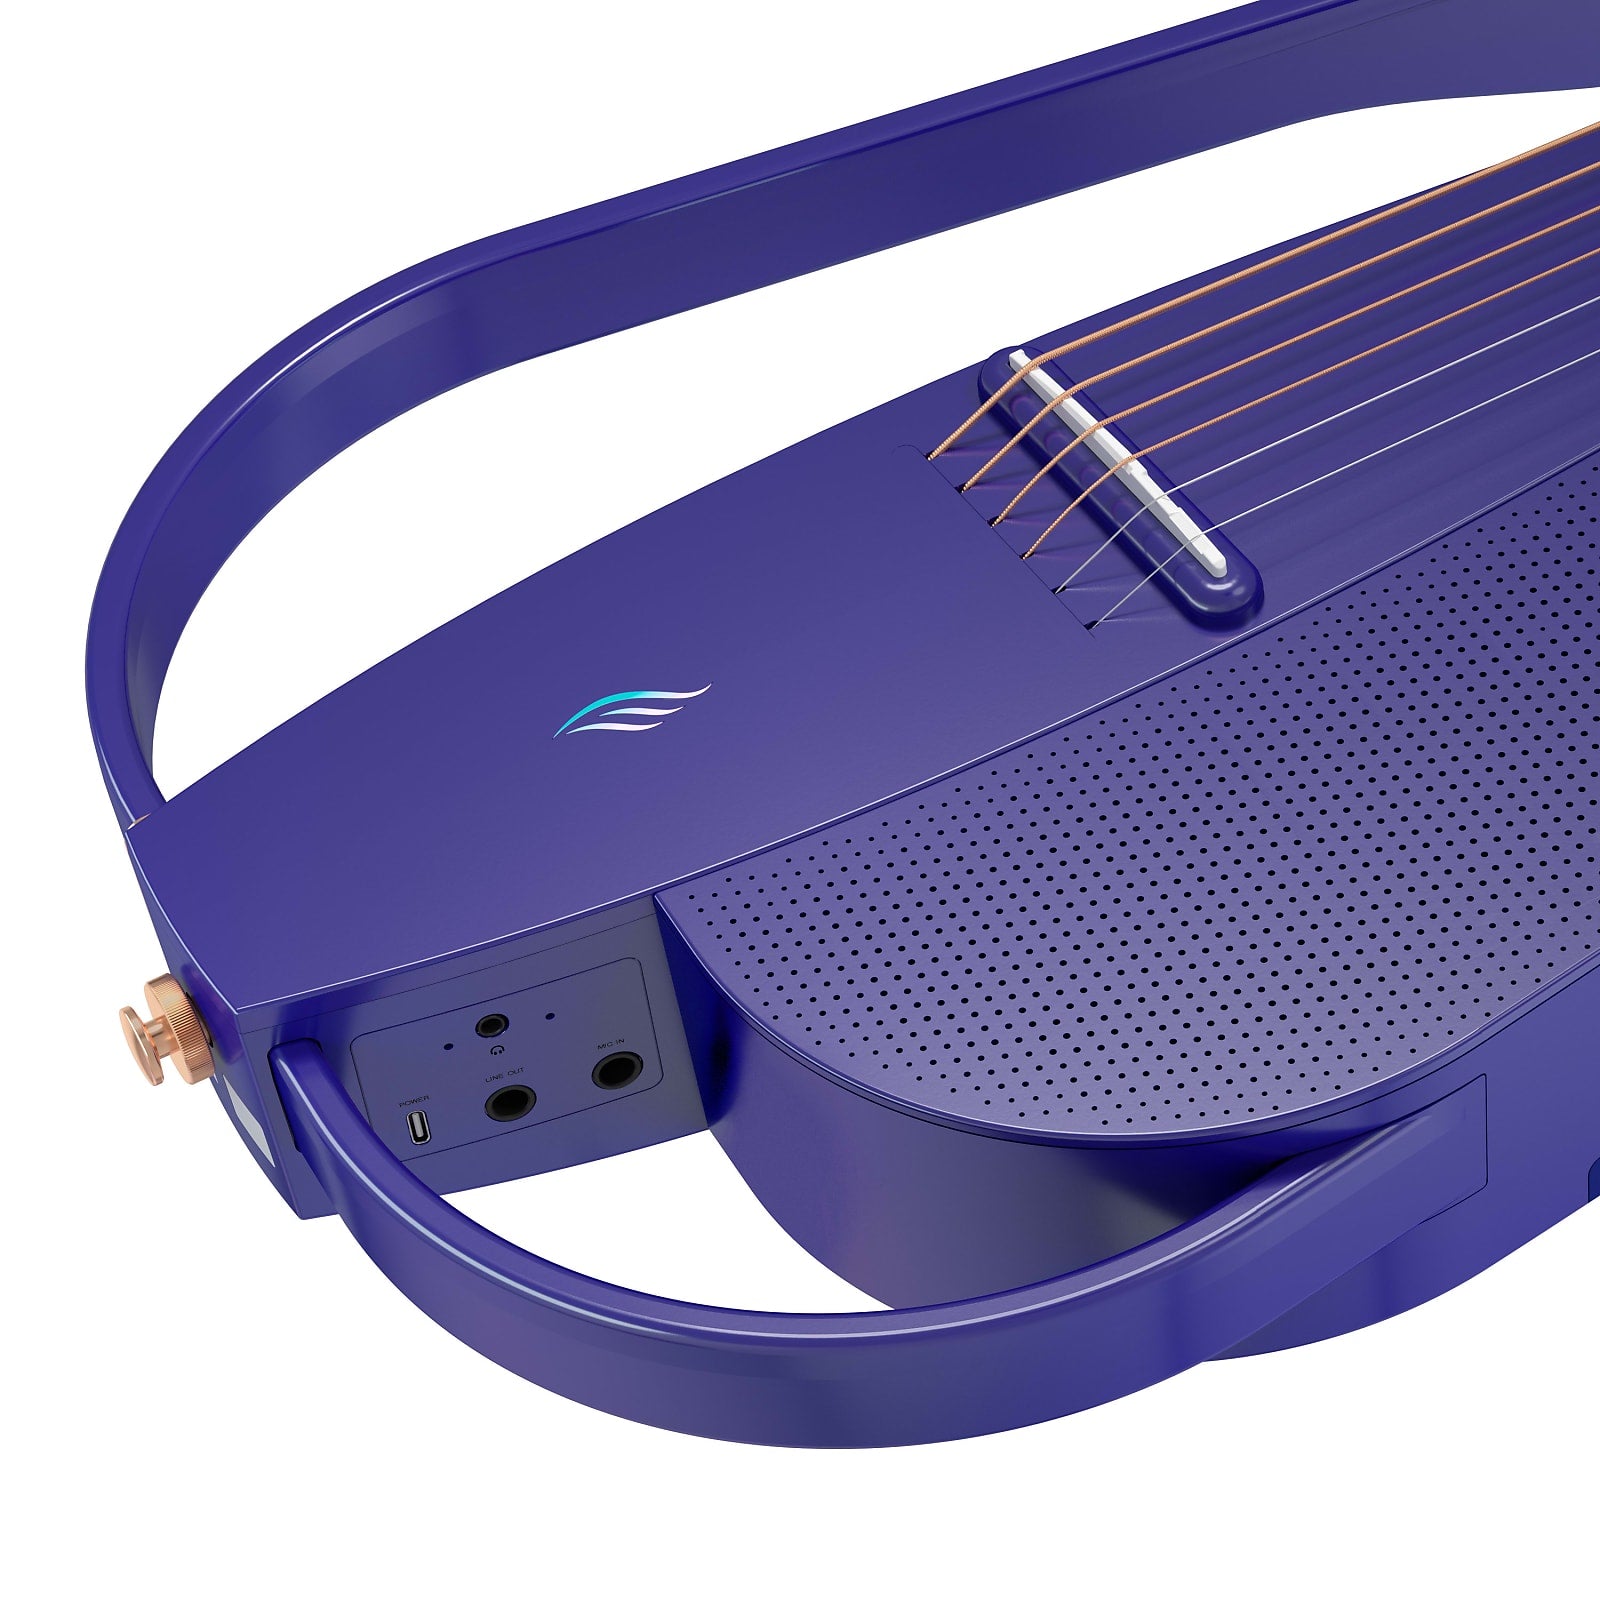 Enya NEXG2 2nd Edition 38Inch Smart Audio Guitar Purple W/Built In Speaker, Wireless Mic, Accessories